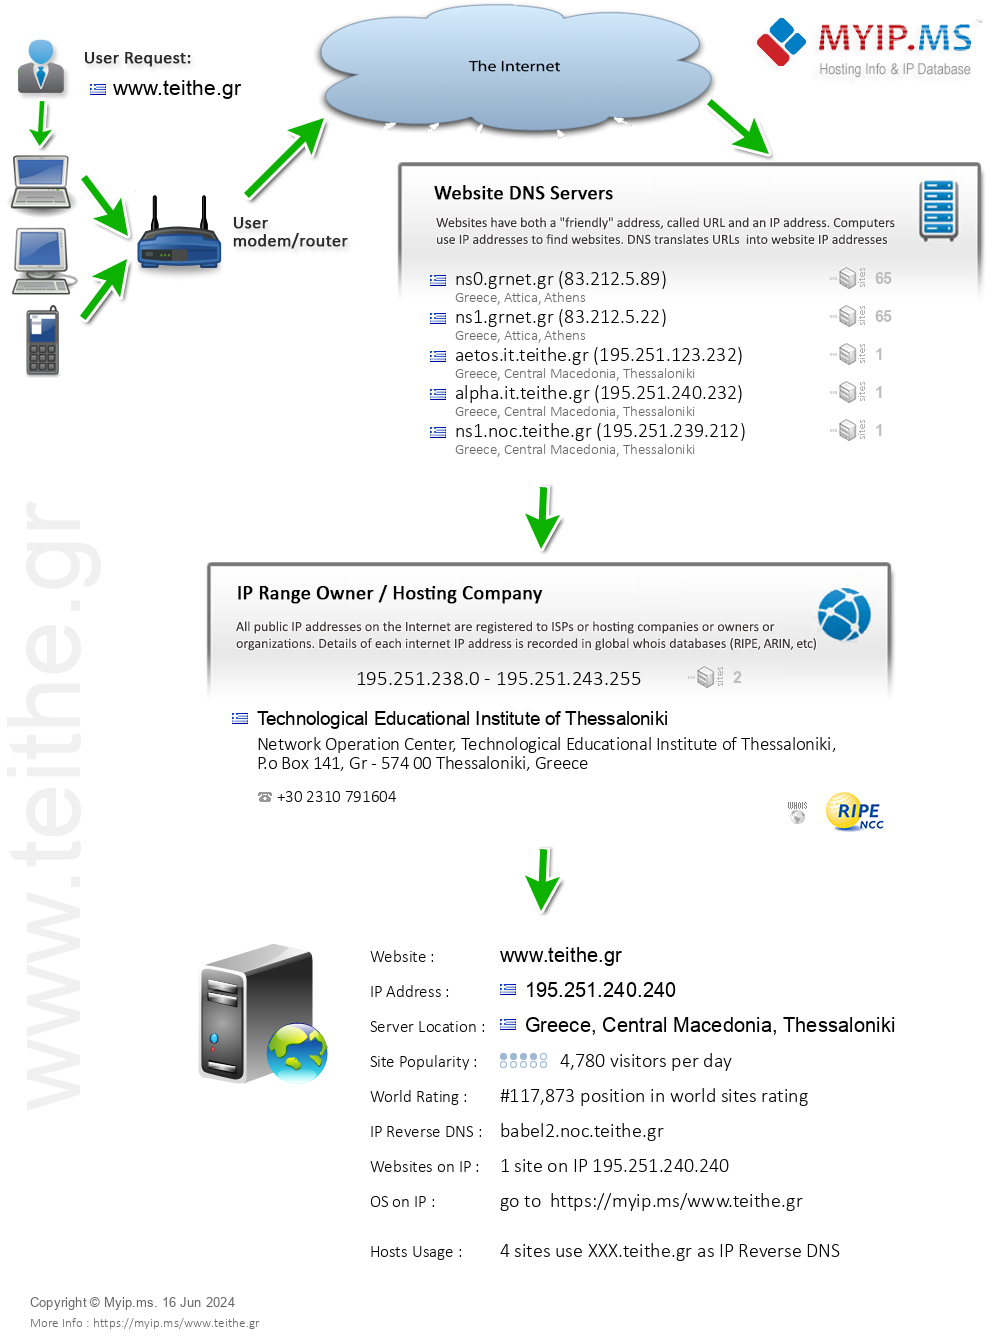 Teithe.gr - Website Hosting Visual IP Diagram